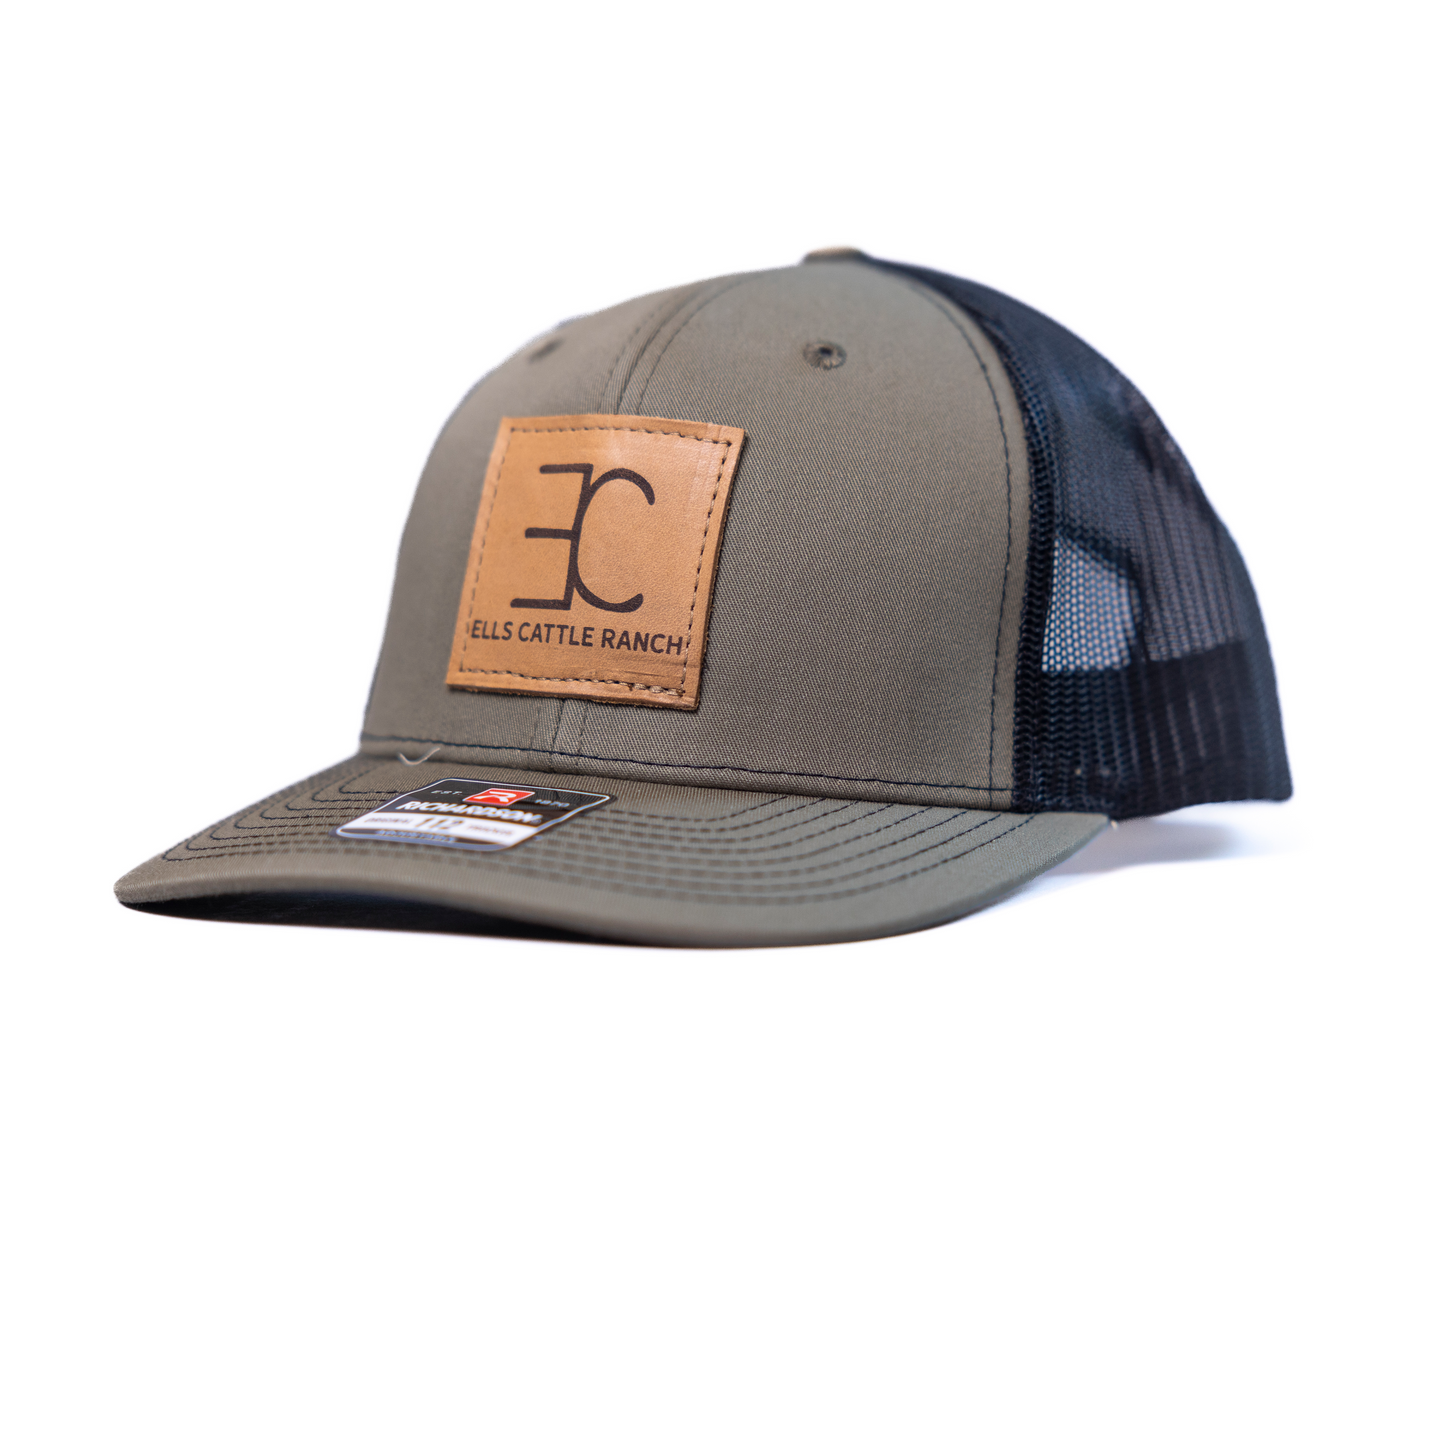 Ells Cattle Ranch Trucker Hats - Leather Logo